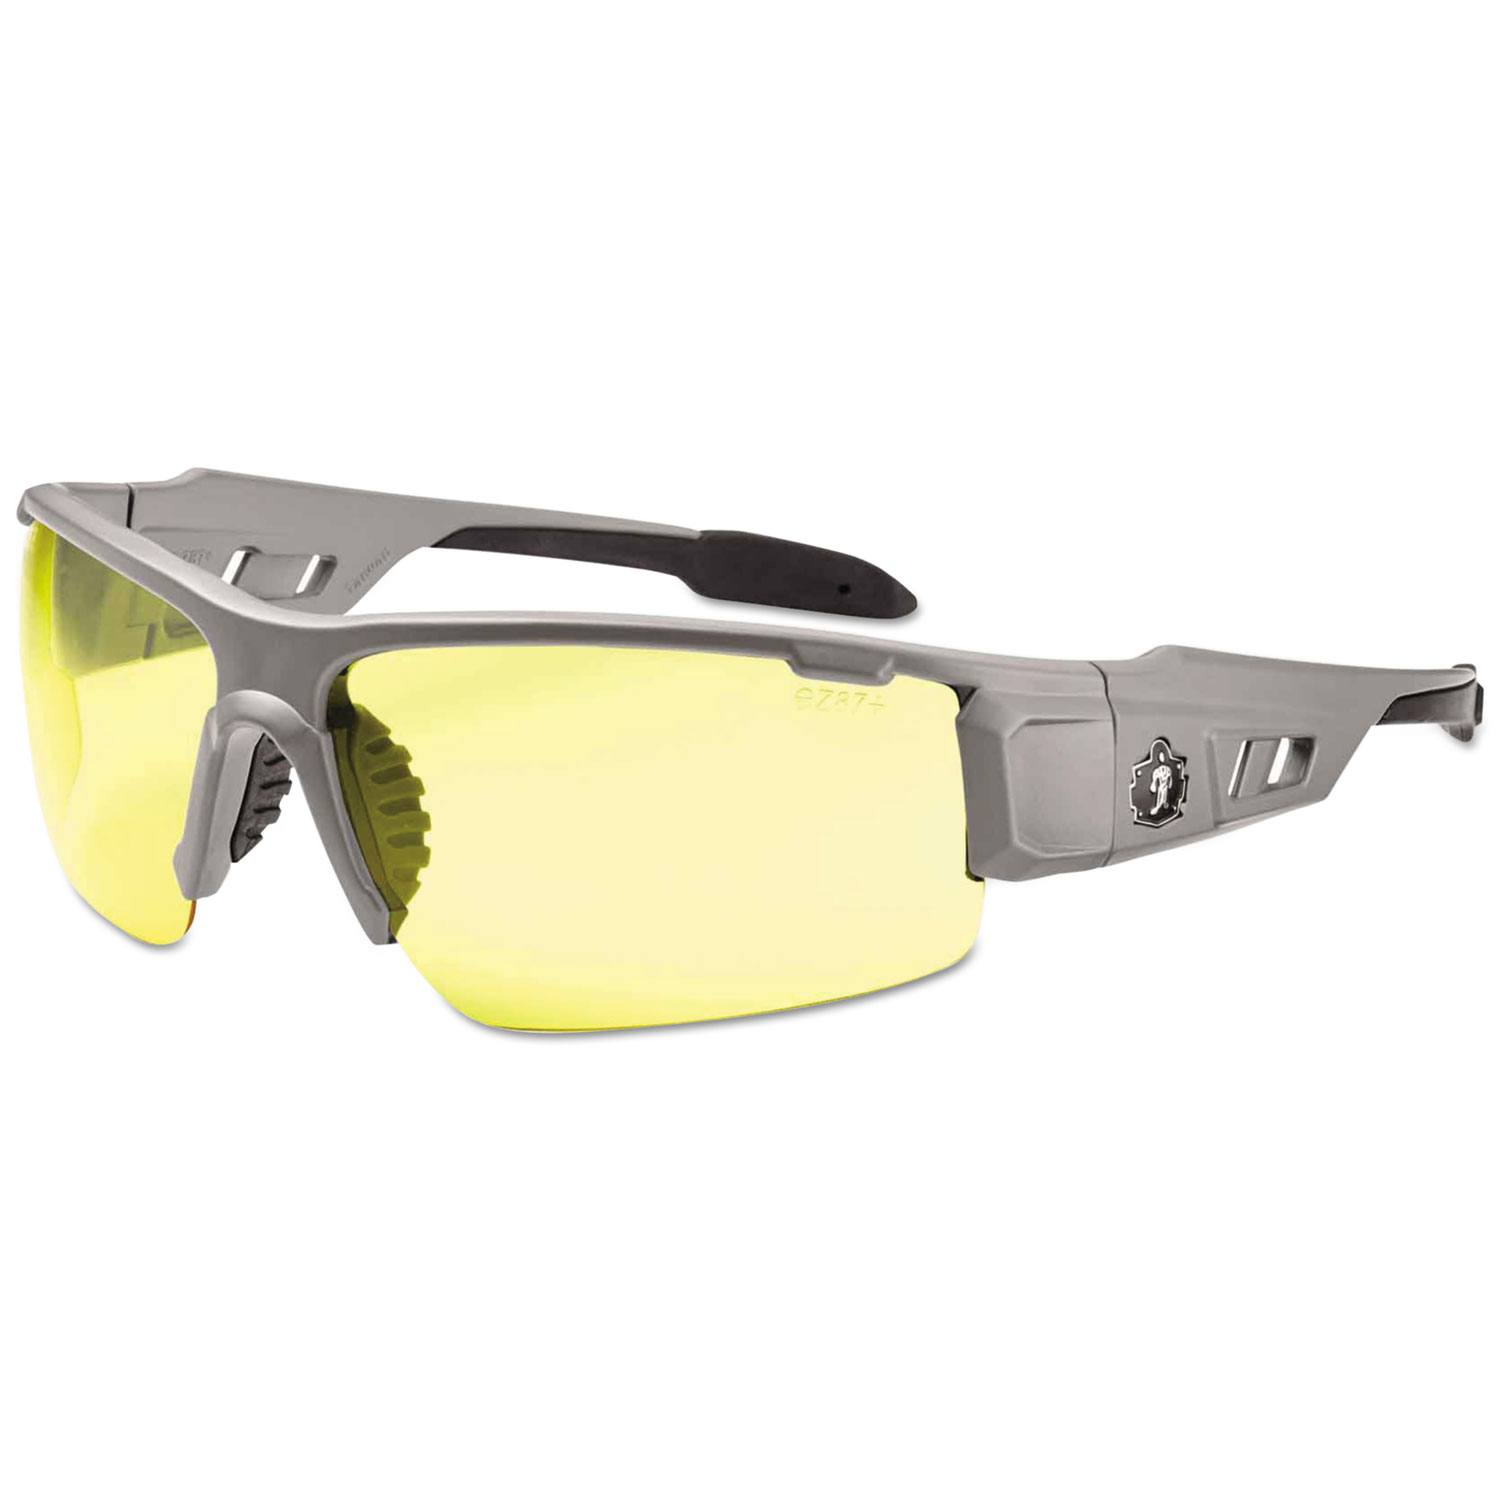  ergodyne 52150 Skullerz Dagr Safety Glasses, Matte Gray Frame/Yellow Lens, Nylon/Polycarb (EGO52150) 